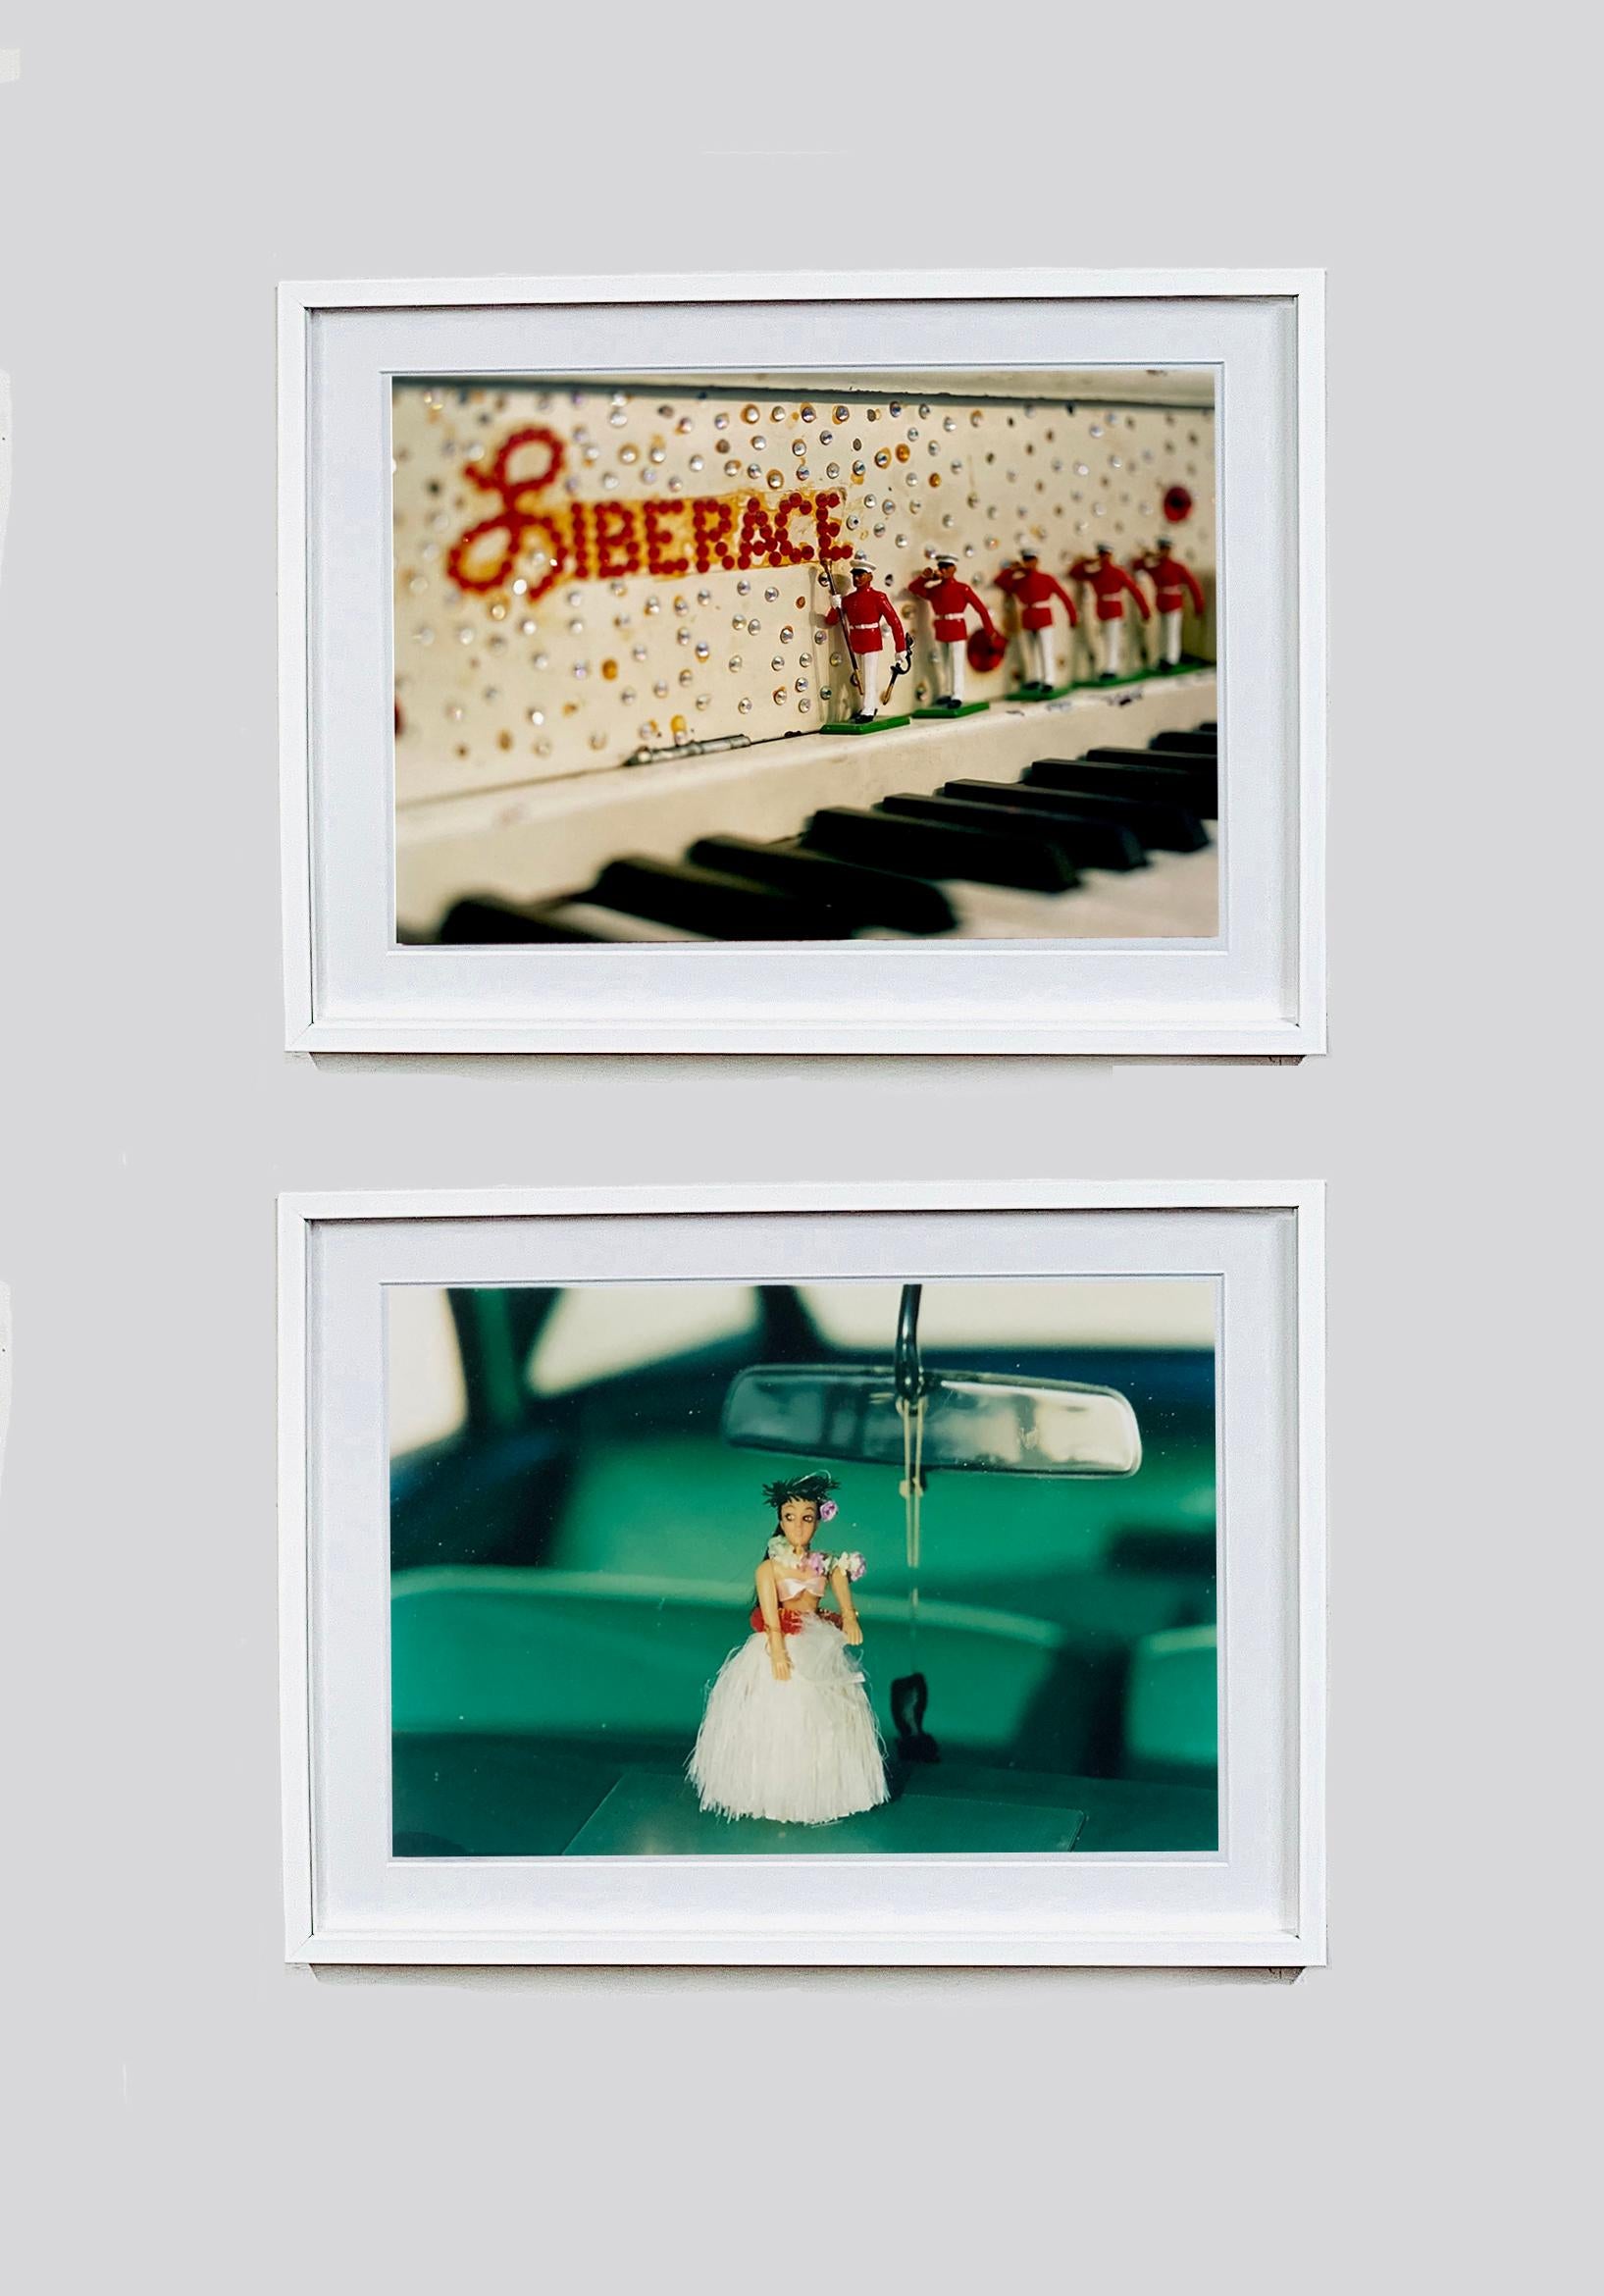 'Liberace's Piano' aus Richard Heeps 'Dream in Colour'-Serie. Richard hat eines von Liberaces Klavieren in einem Privathaus erbeutet, es hat eine  ein archetypisches Spaß-, Kitsch- und Las-Vegas-Gefühl.

Dieses Kunstwerk ist eine auf 25 Exemplare